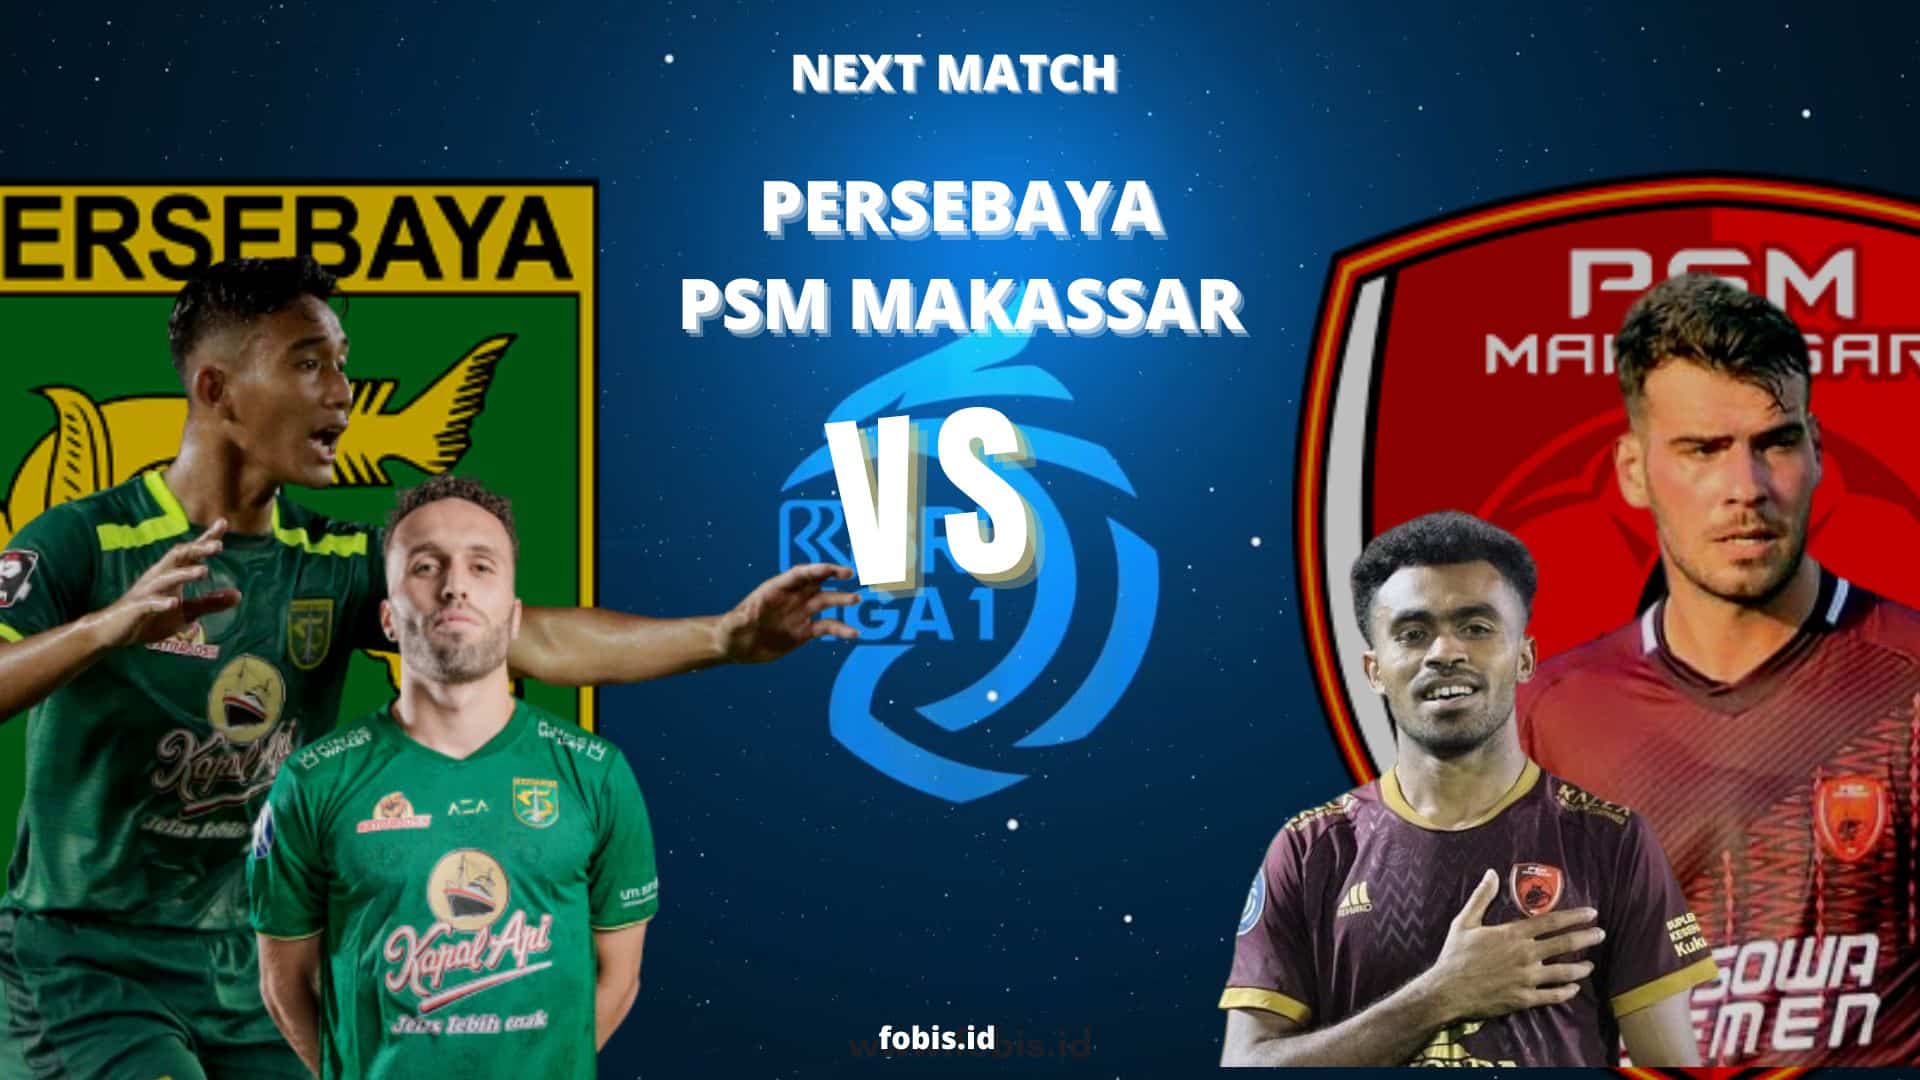 Persebaya vs PSM Makassar